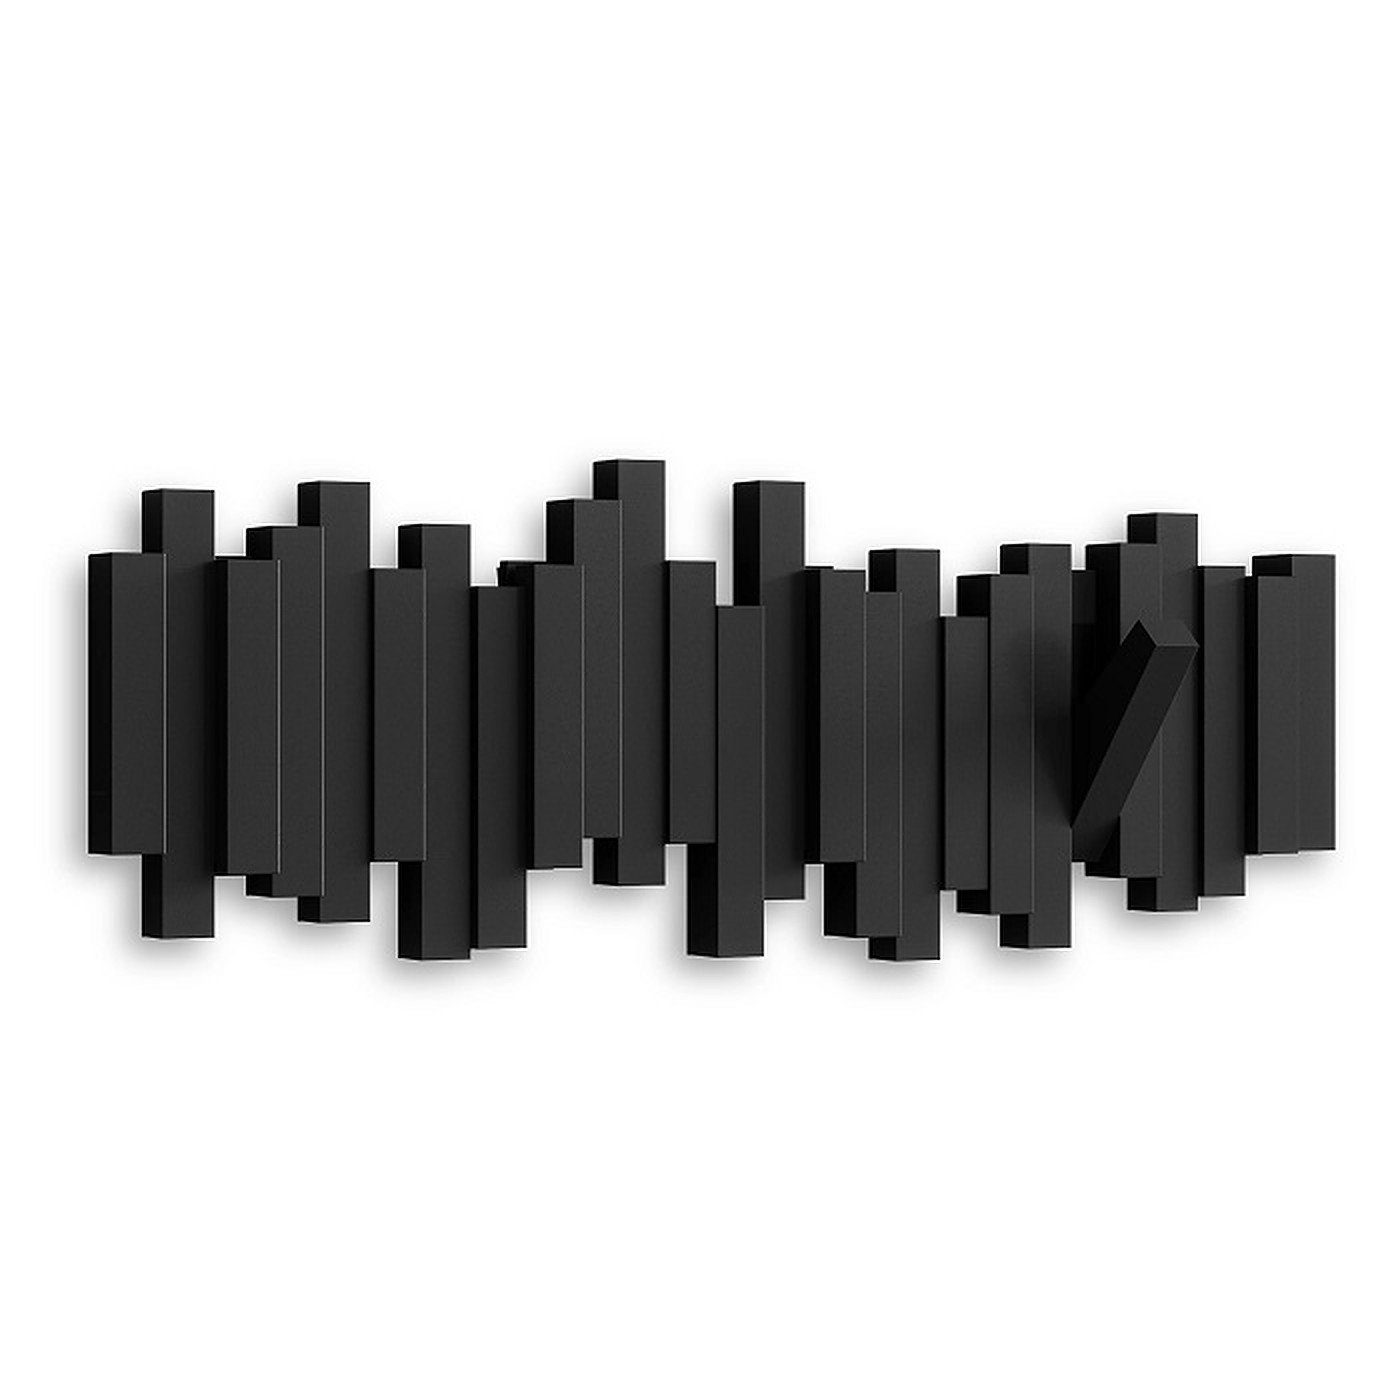 Umbra Garderobenleiste STICKS Multi HOOK platzsparende Garderobenleiste mit 5 Haken, 5 bewegliche Haken schwarz